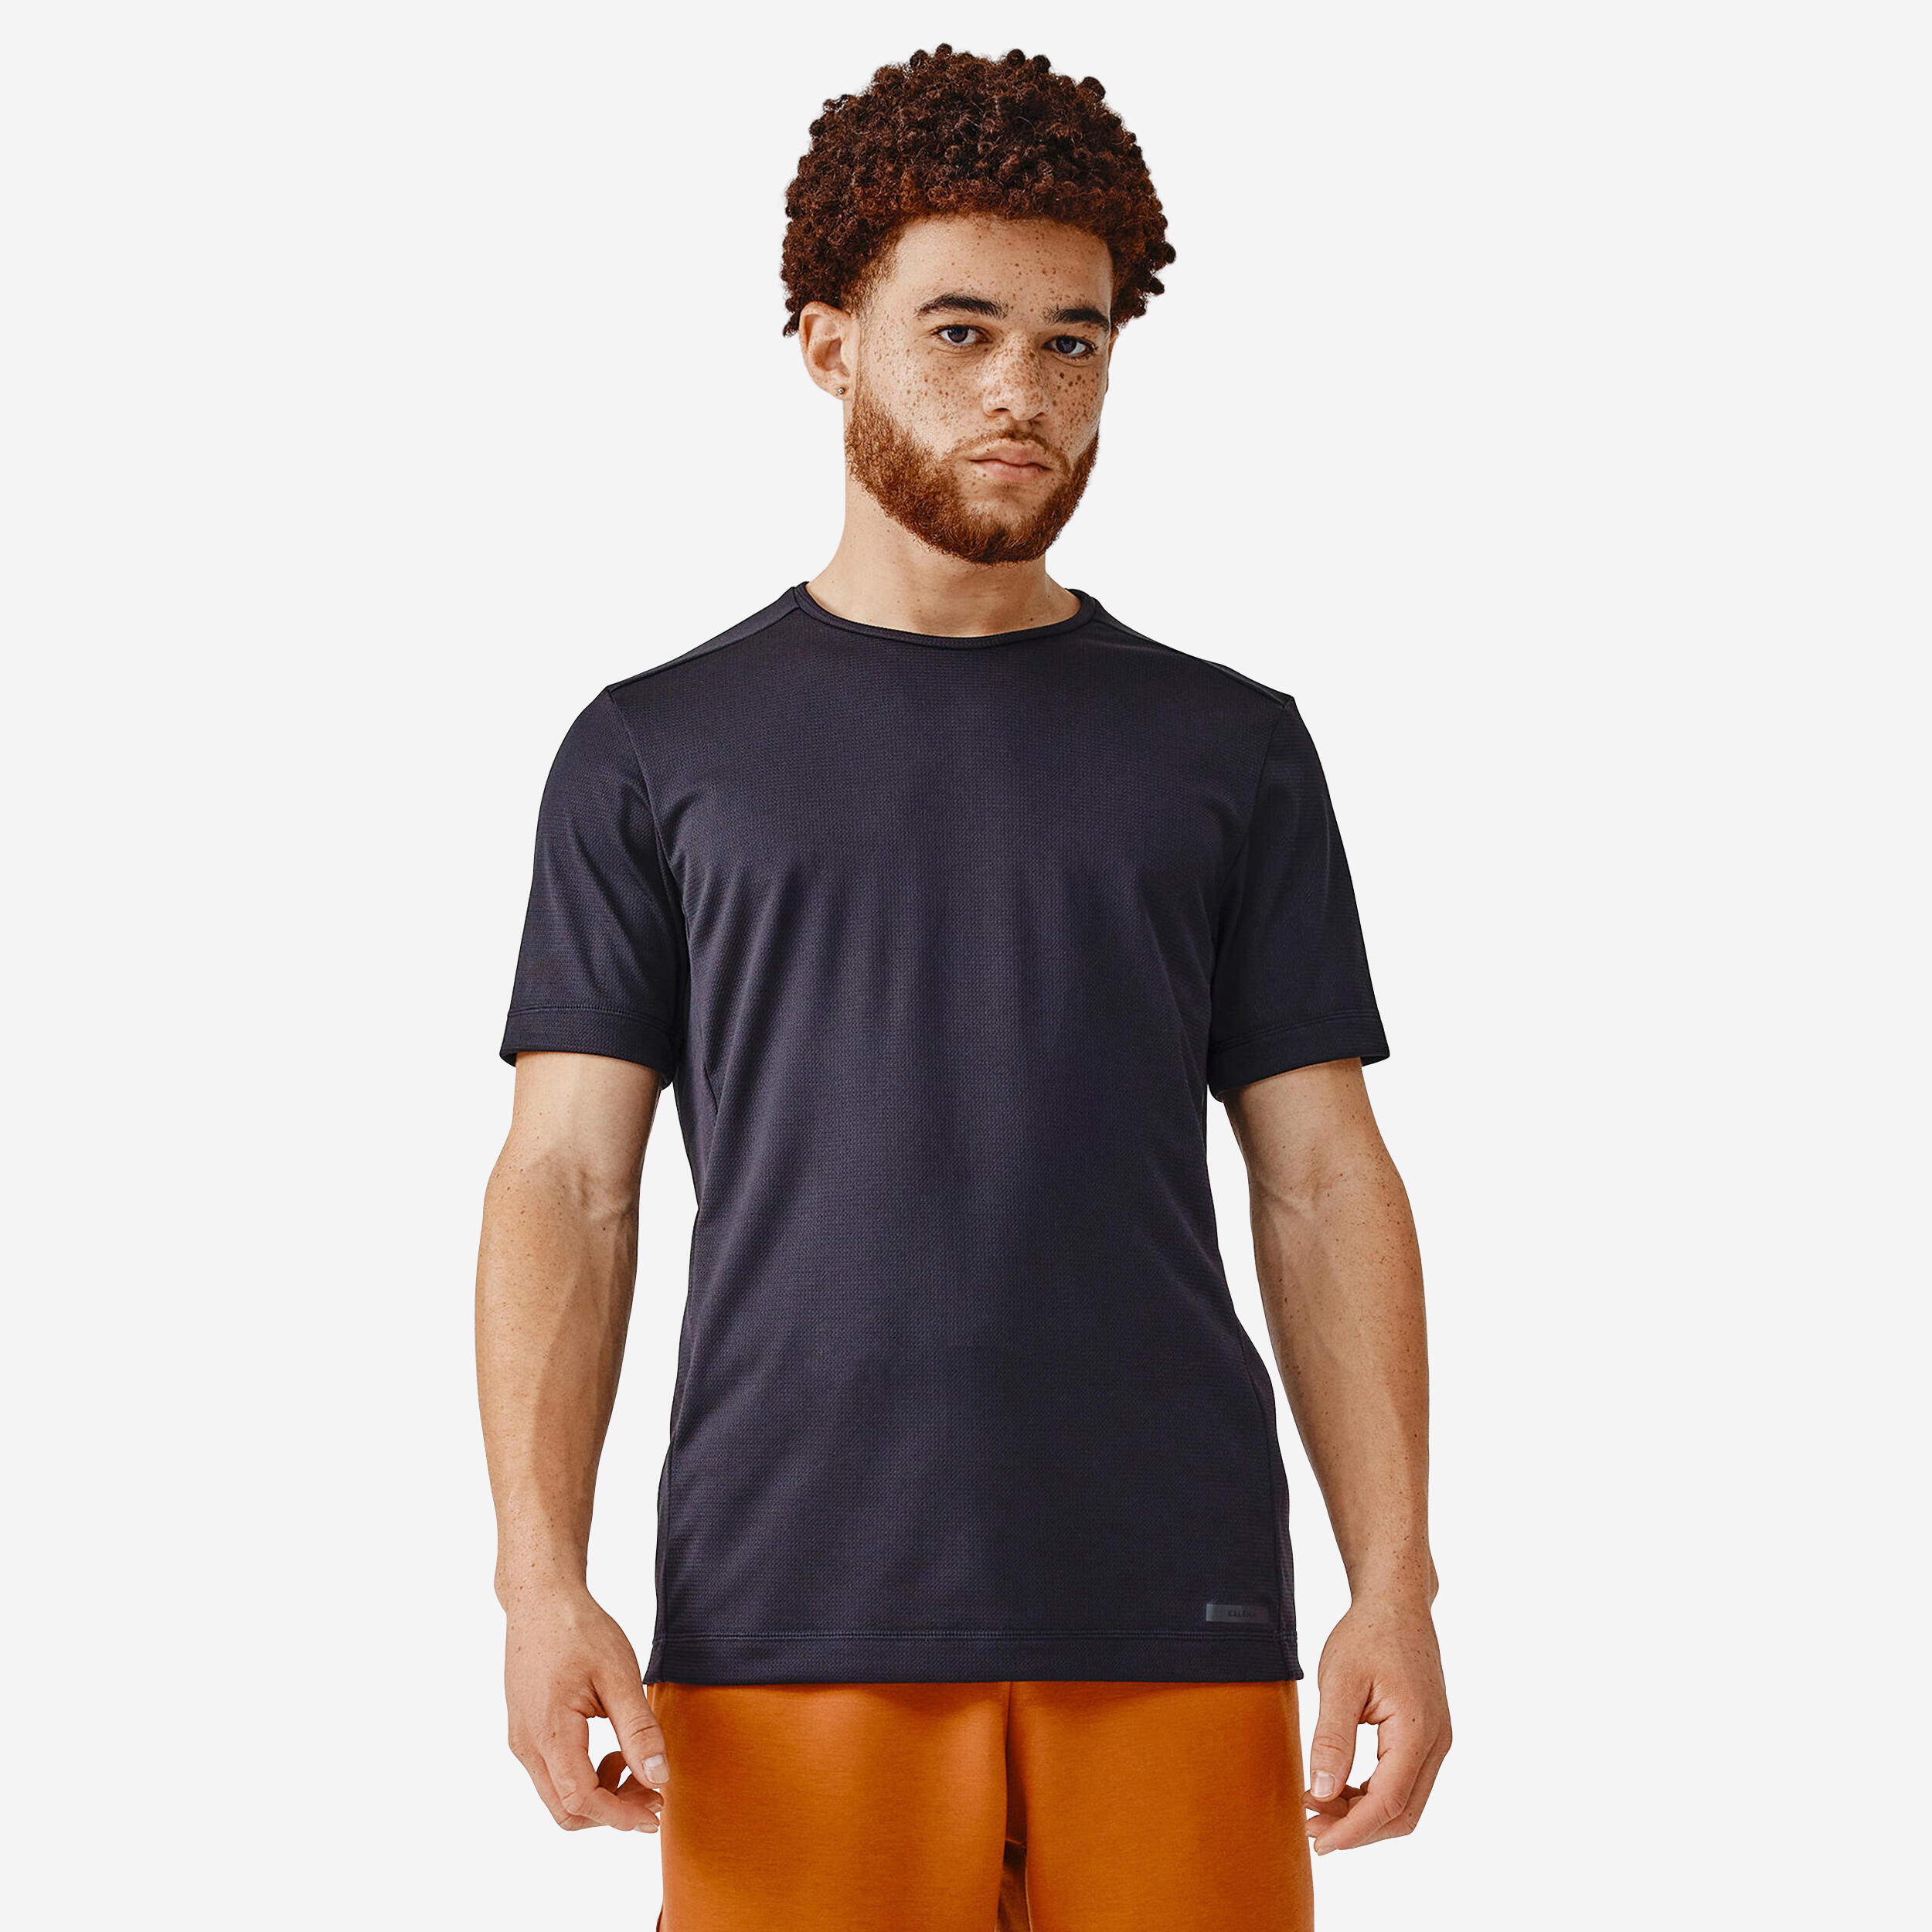 Dry Men's Breathable Running T-shirt - Black 1/7